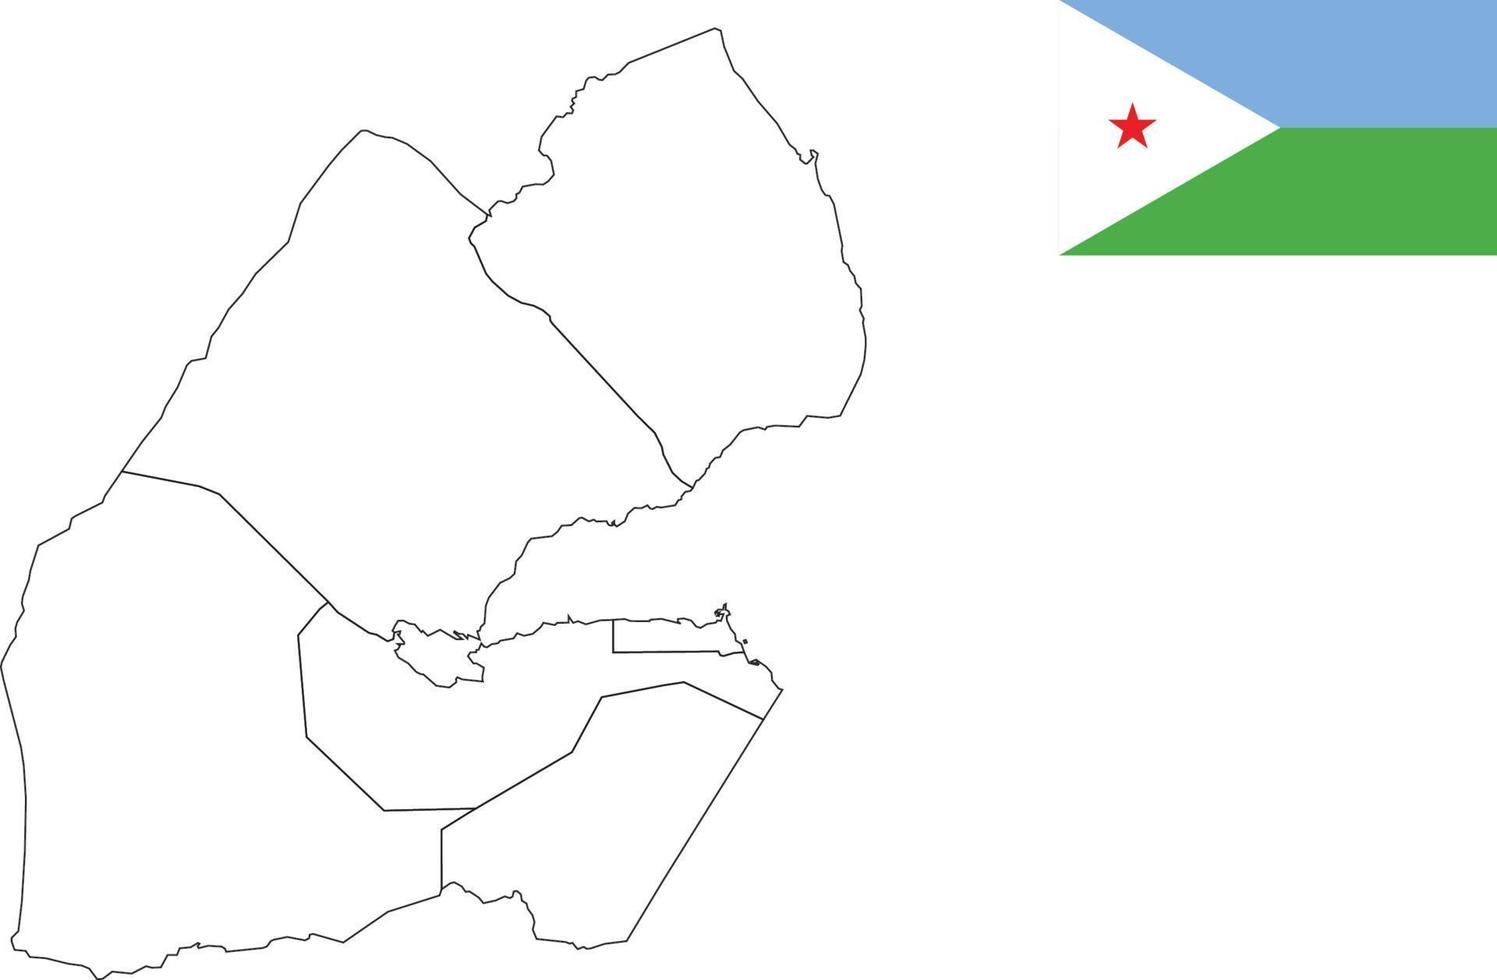 Karte und Flagge von Dschibuti vektor